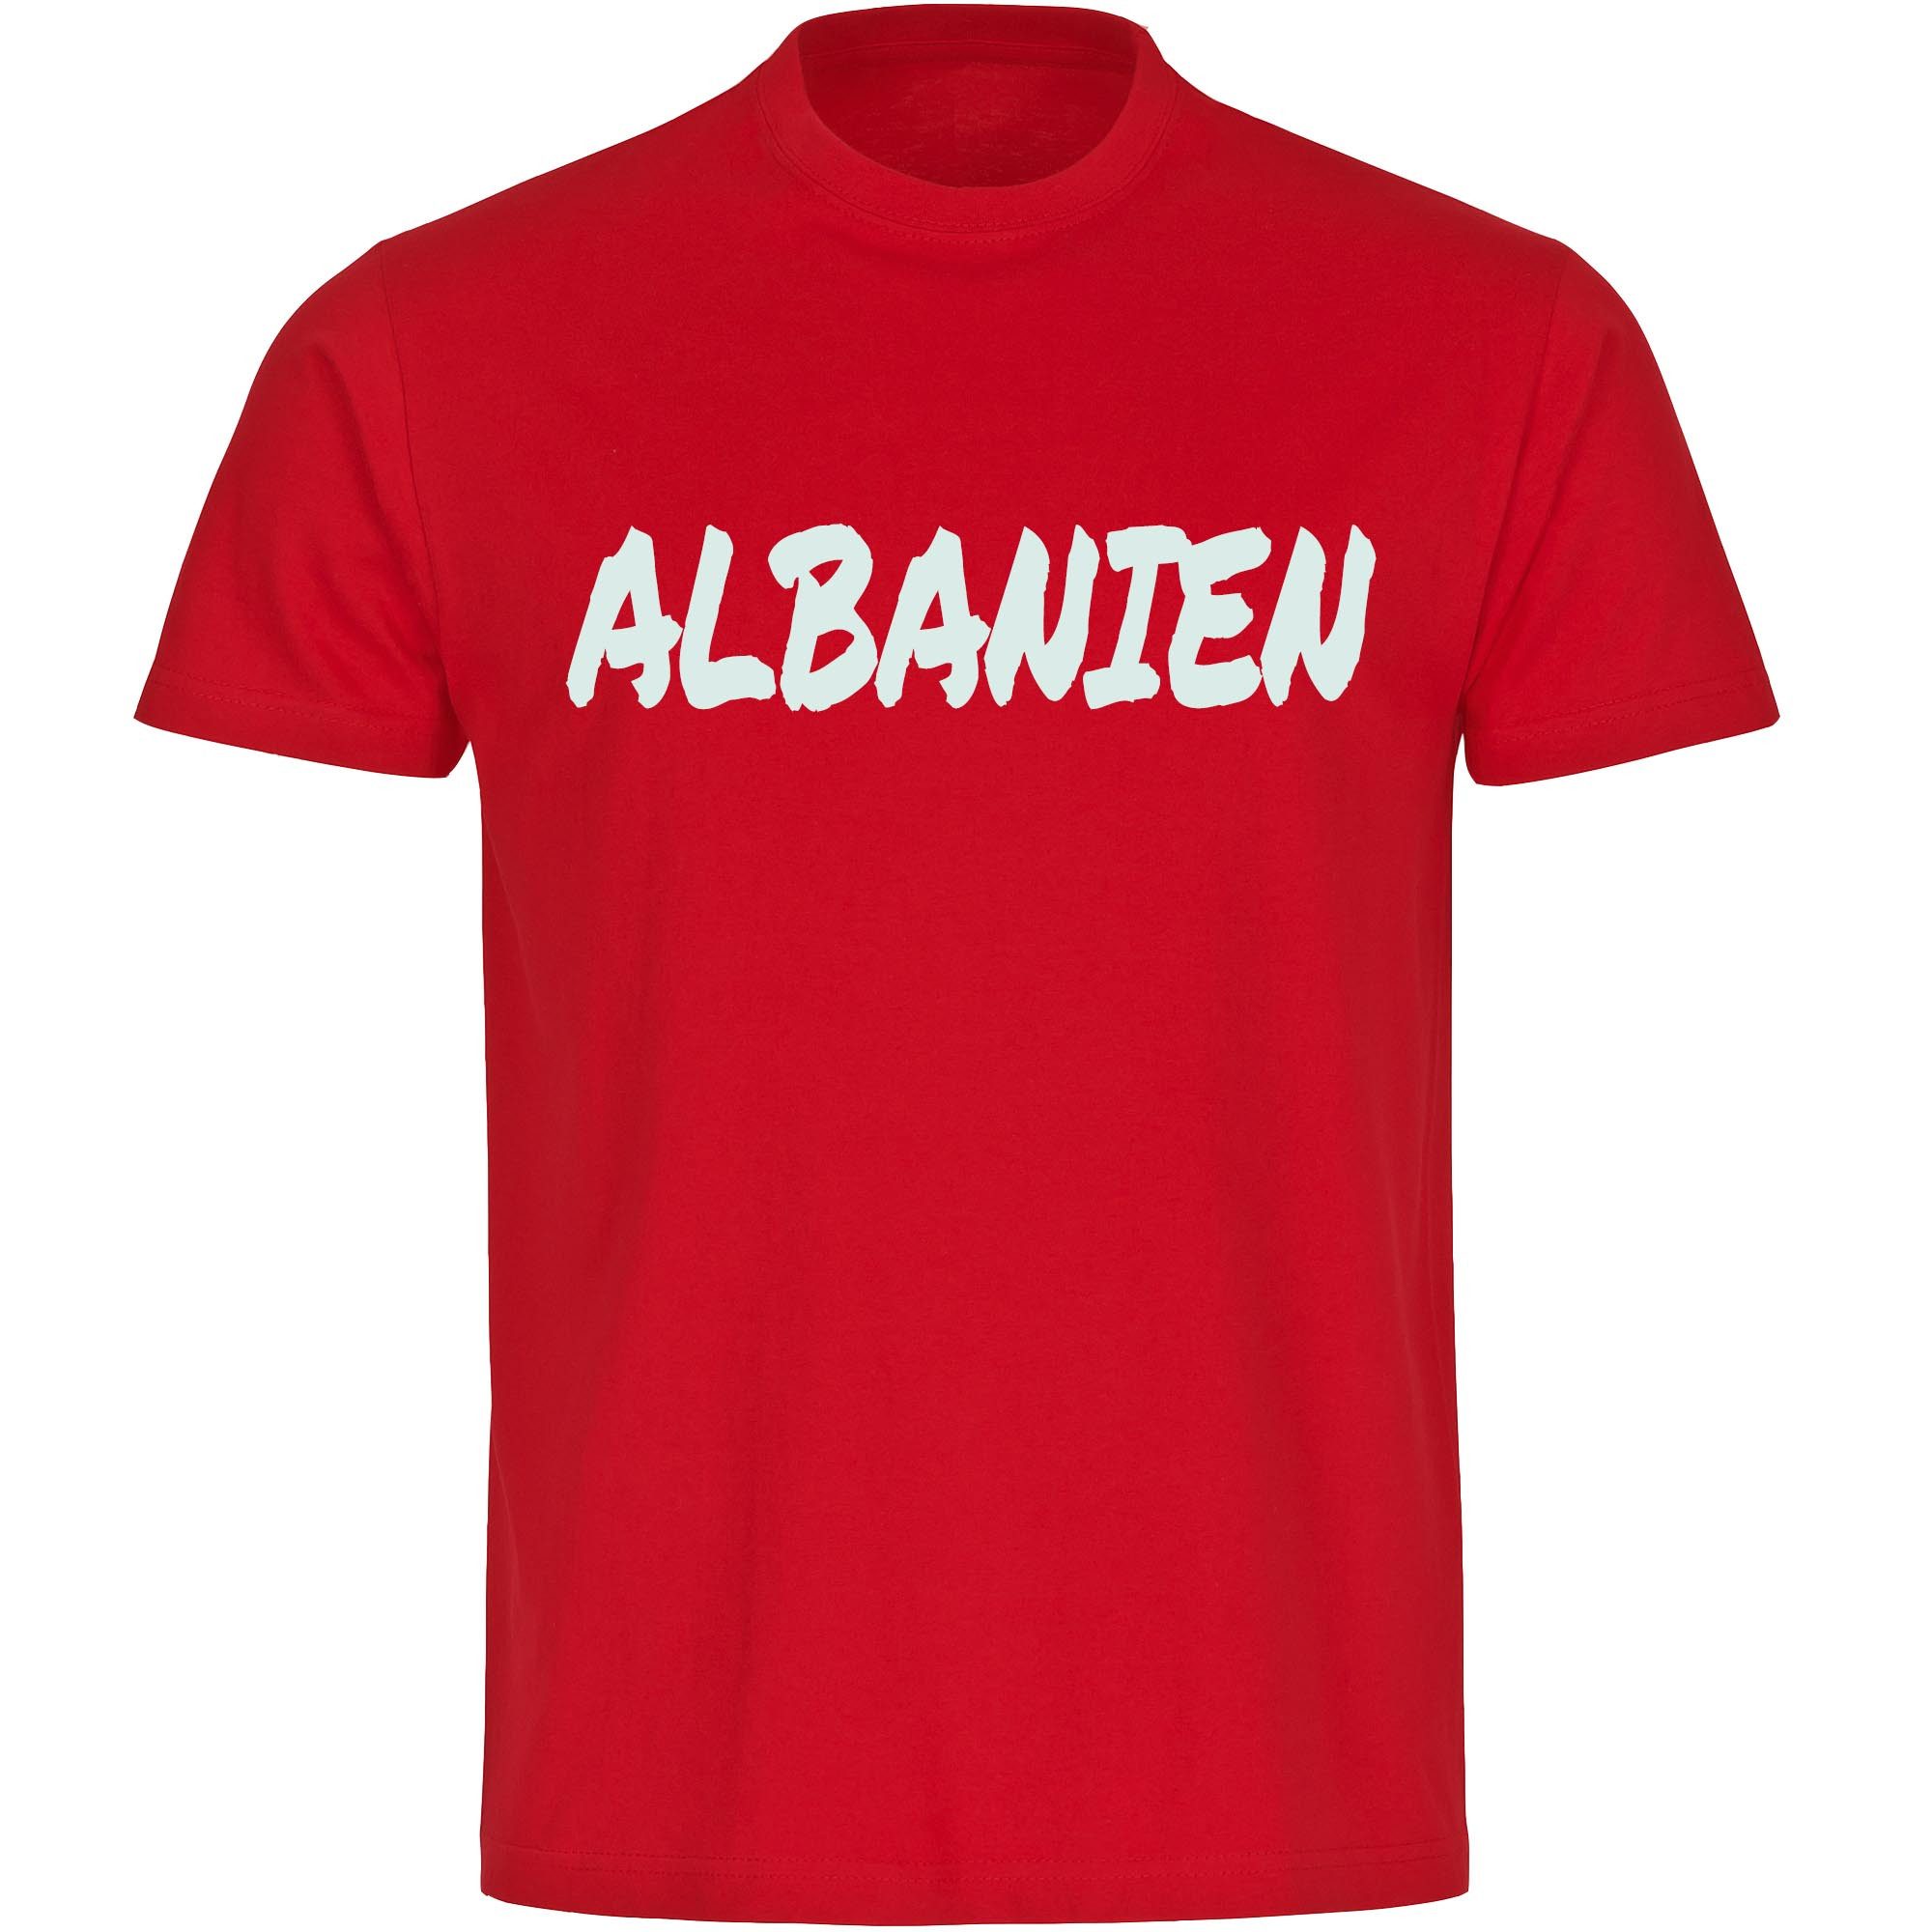 multifanshop T-Shirt Herren Albanien - Textmarker - Männer